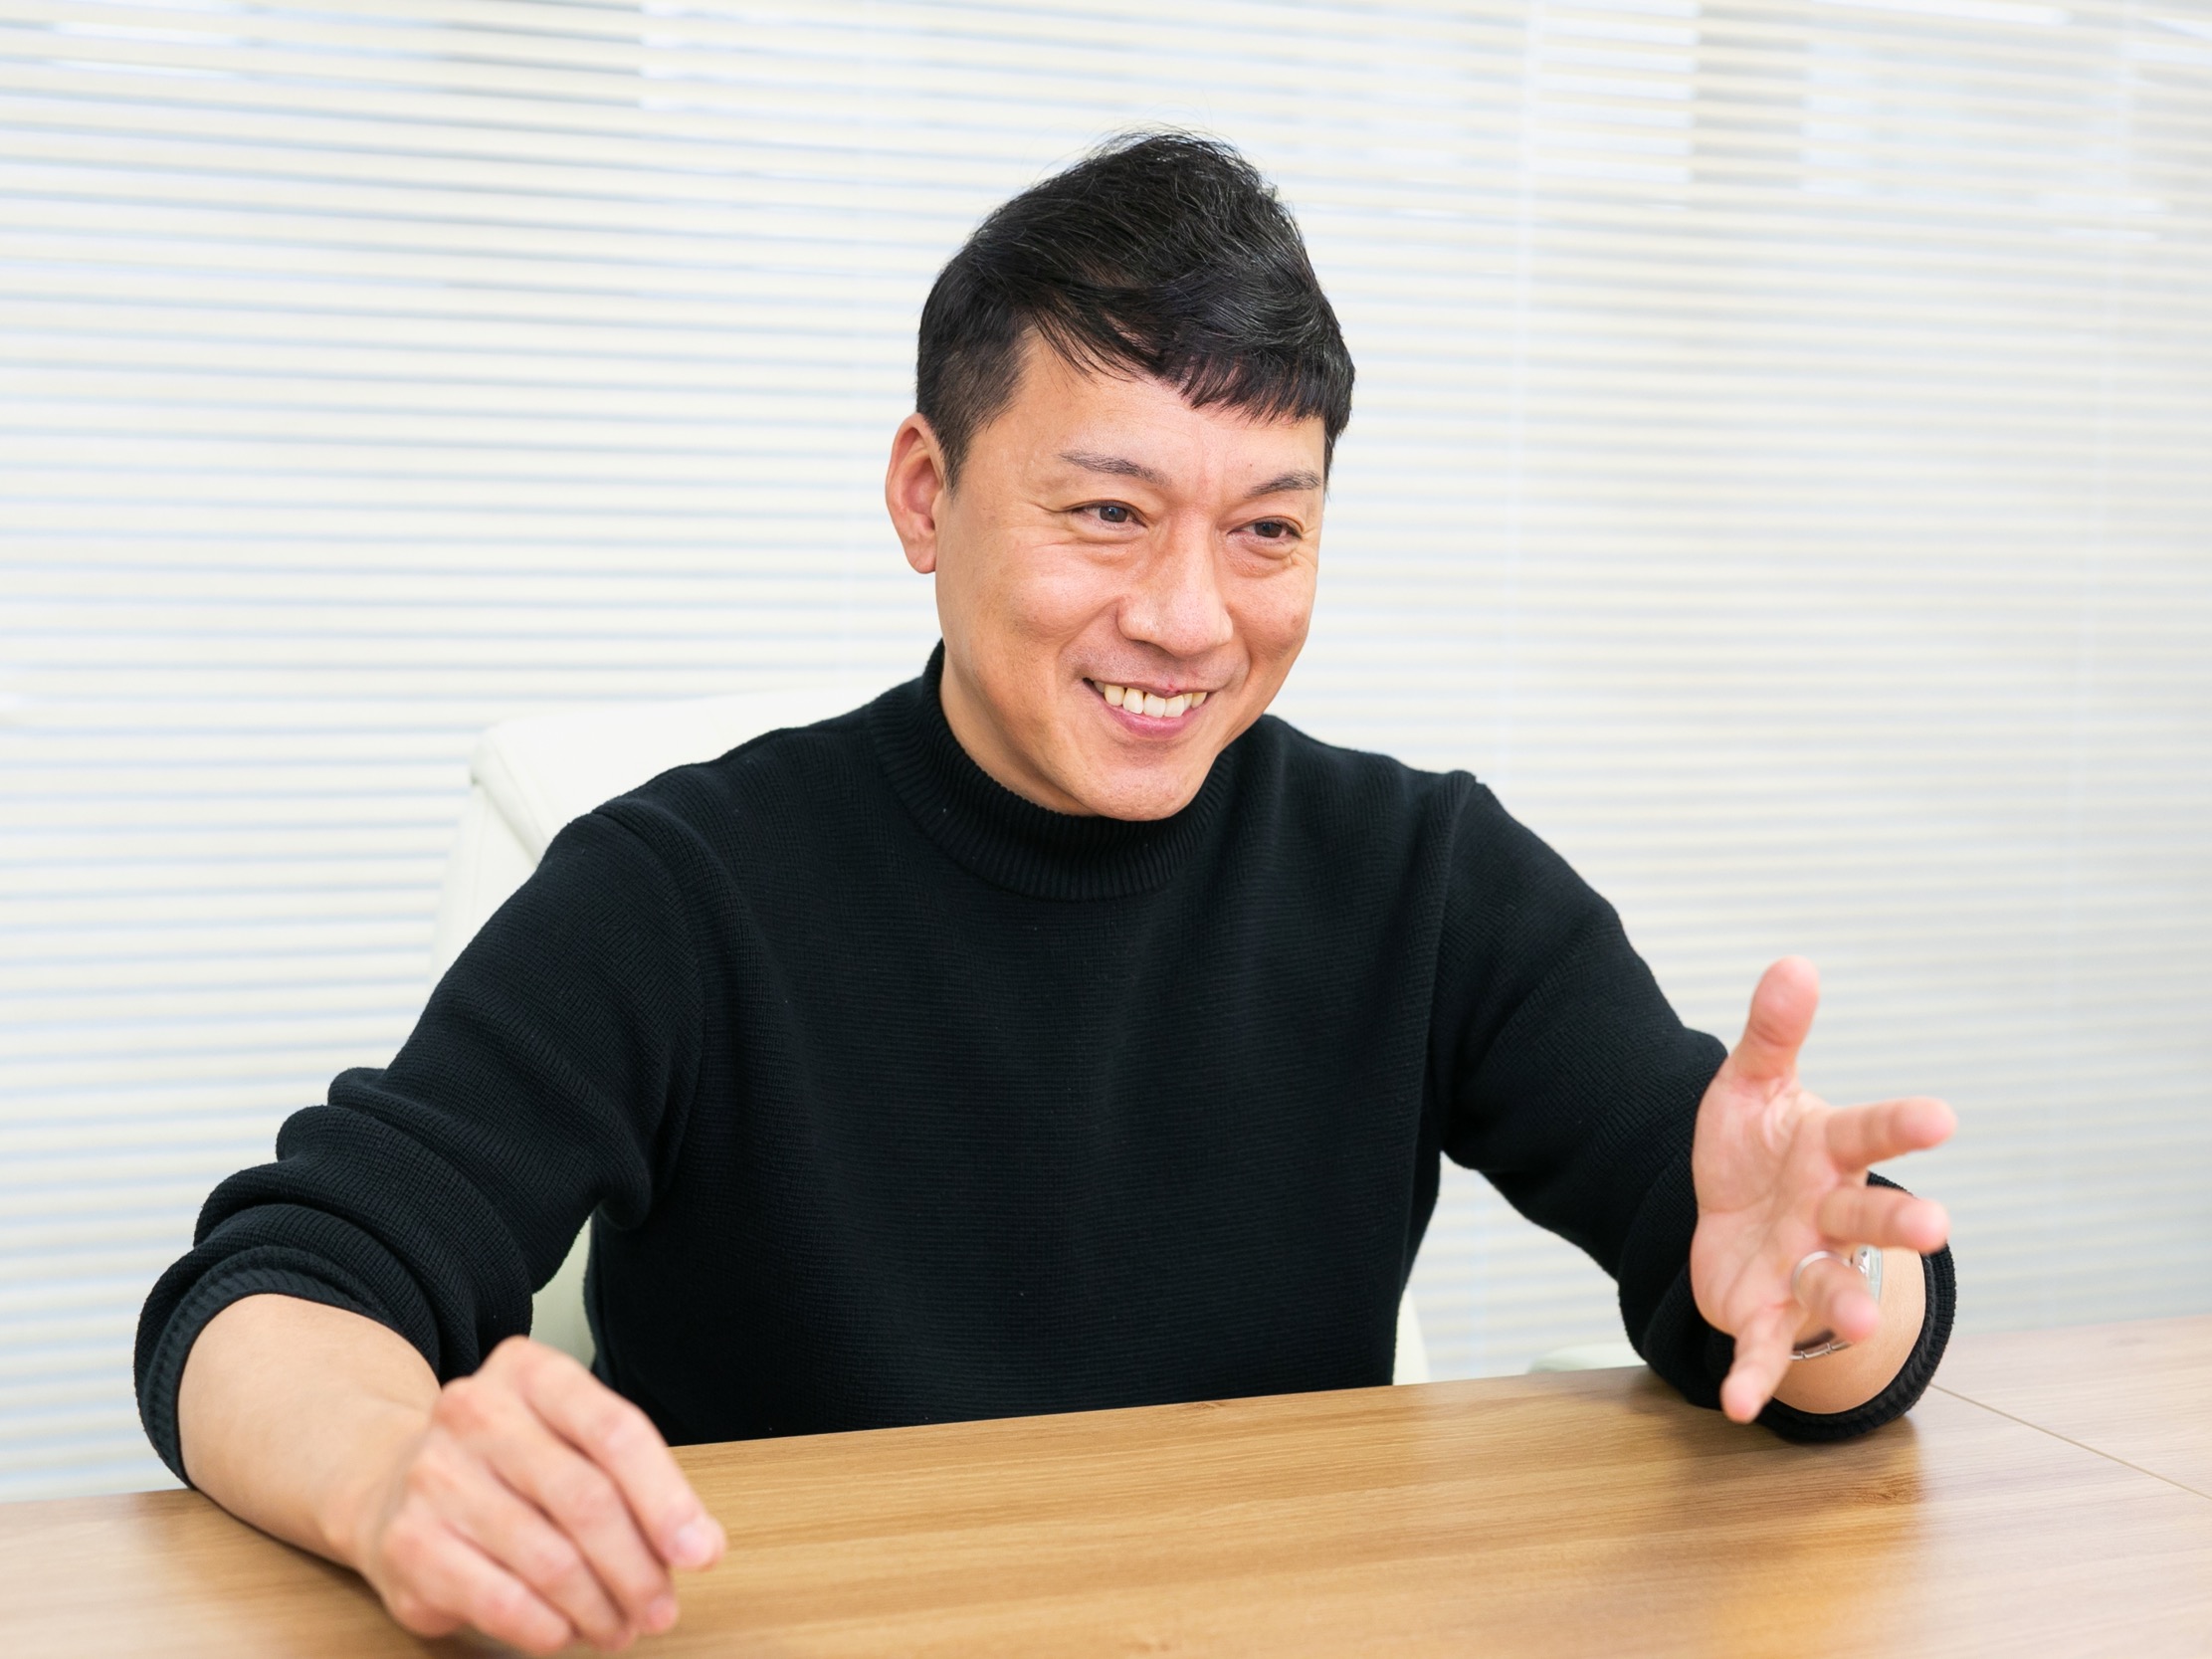 製品開発は、社長執行役員の中島氏が自ら携わる。今後も革新的な製品リリースを控えている。